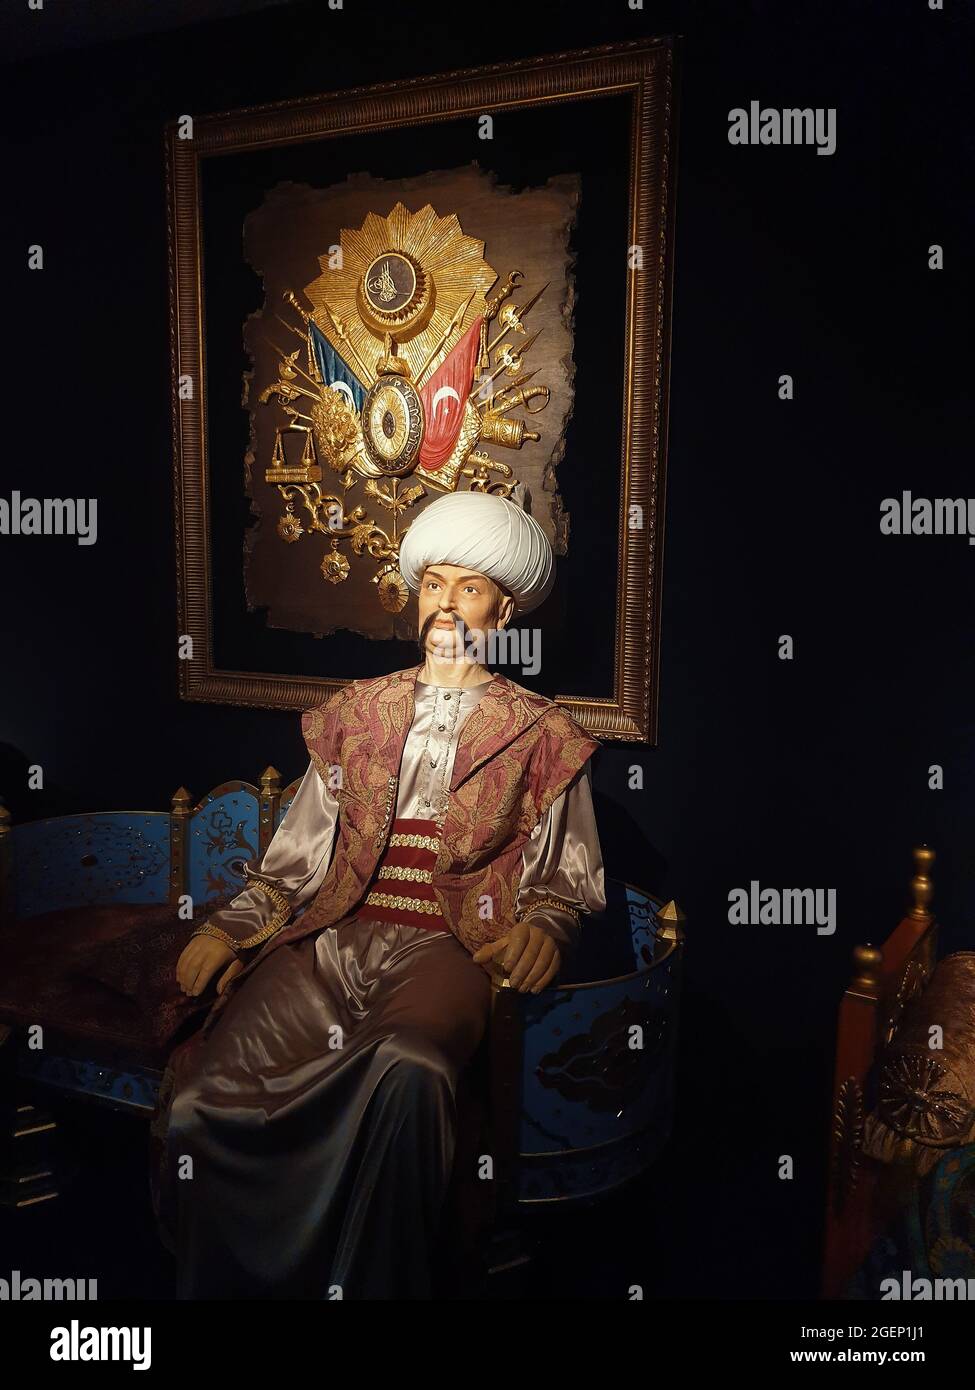 Eskisehir, Turquie, 7 juin 2019 : sculpture de l'Alp Arslan, deuxième sultan du Grand Empire Seljuk, assis sur son trône devant l'emblème ottoman. Banque D'Images